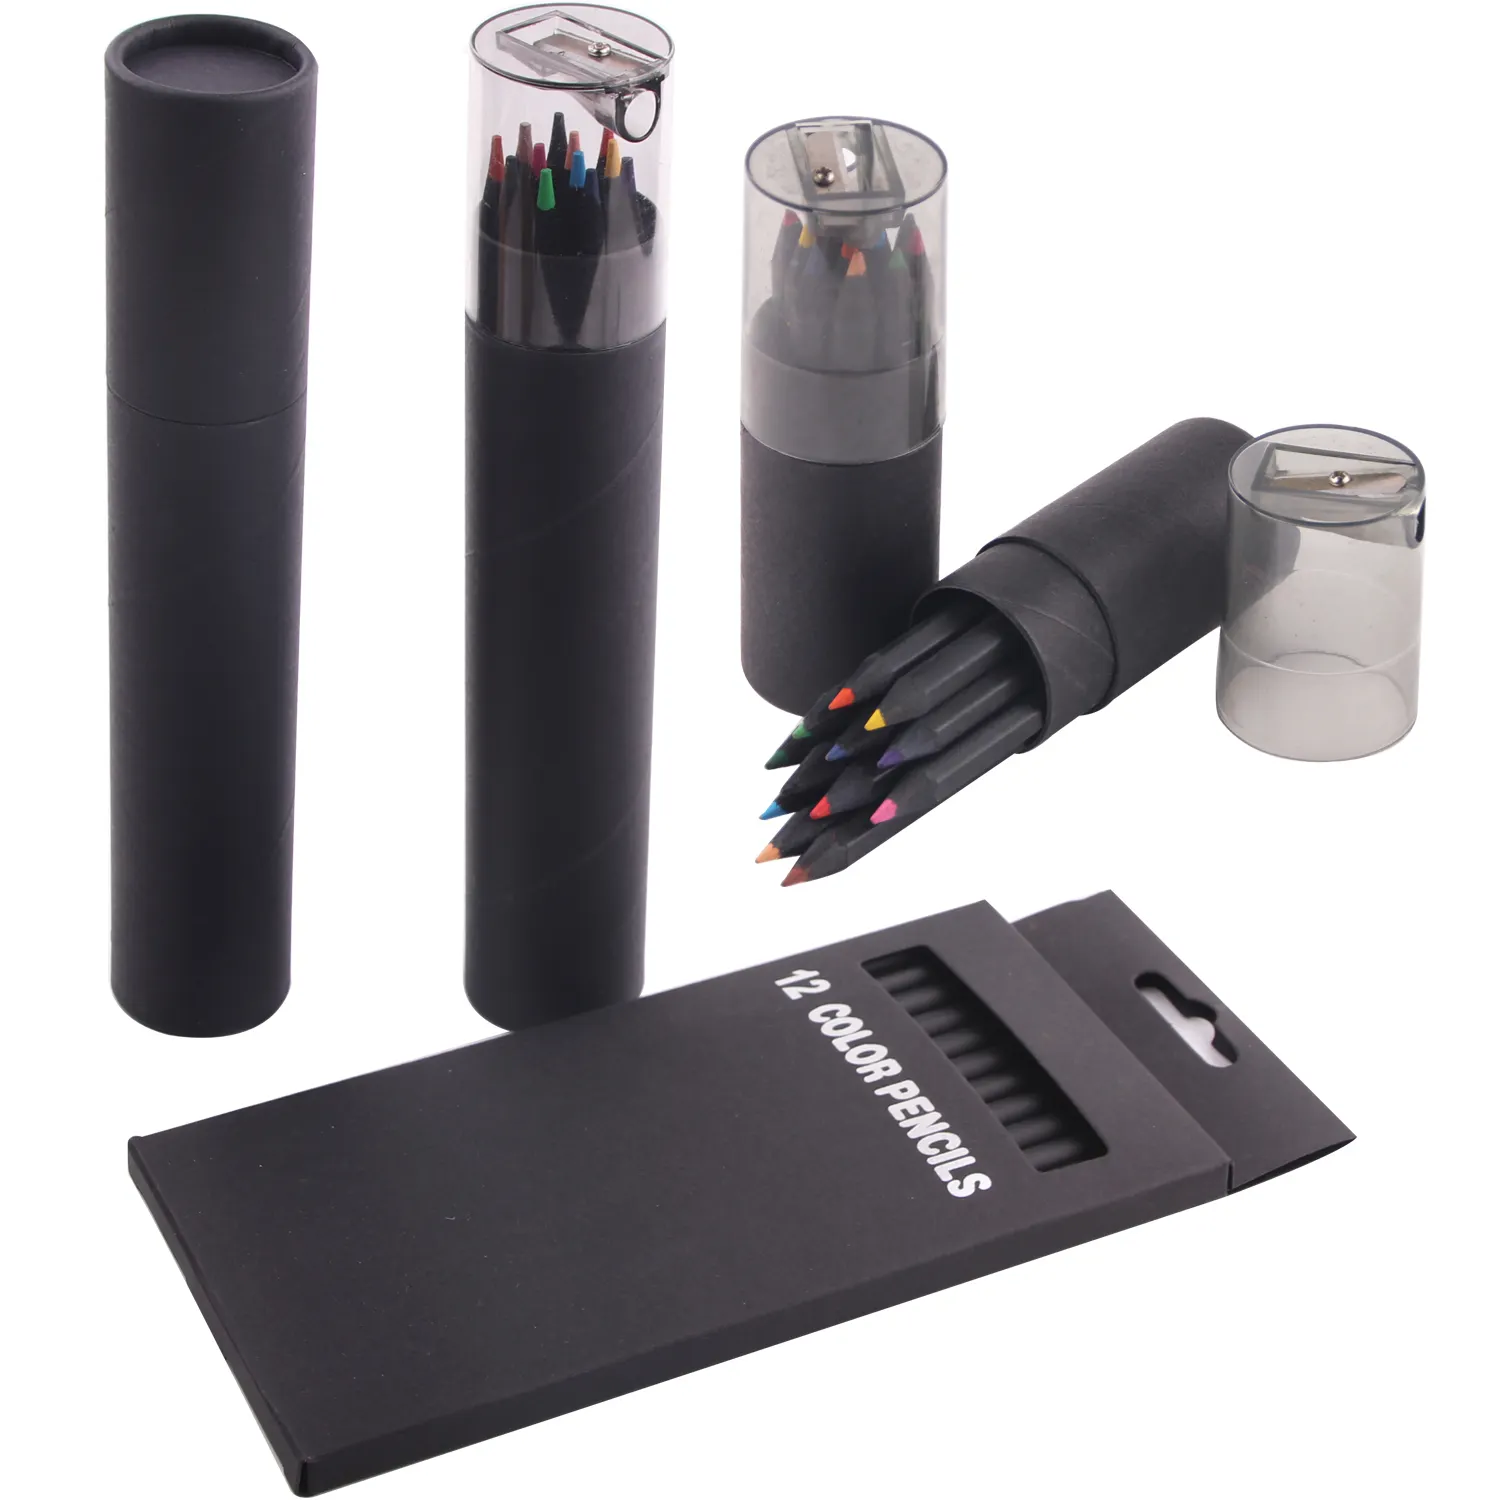 Chất lượng cao 12pcs màu bút chì trong 7-inch và 3.5-inch gỗ màu đen trường hợp